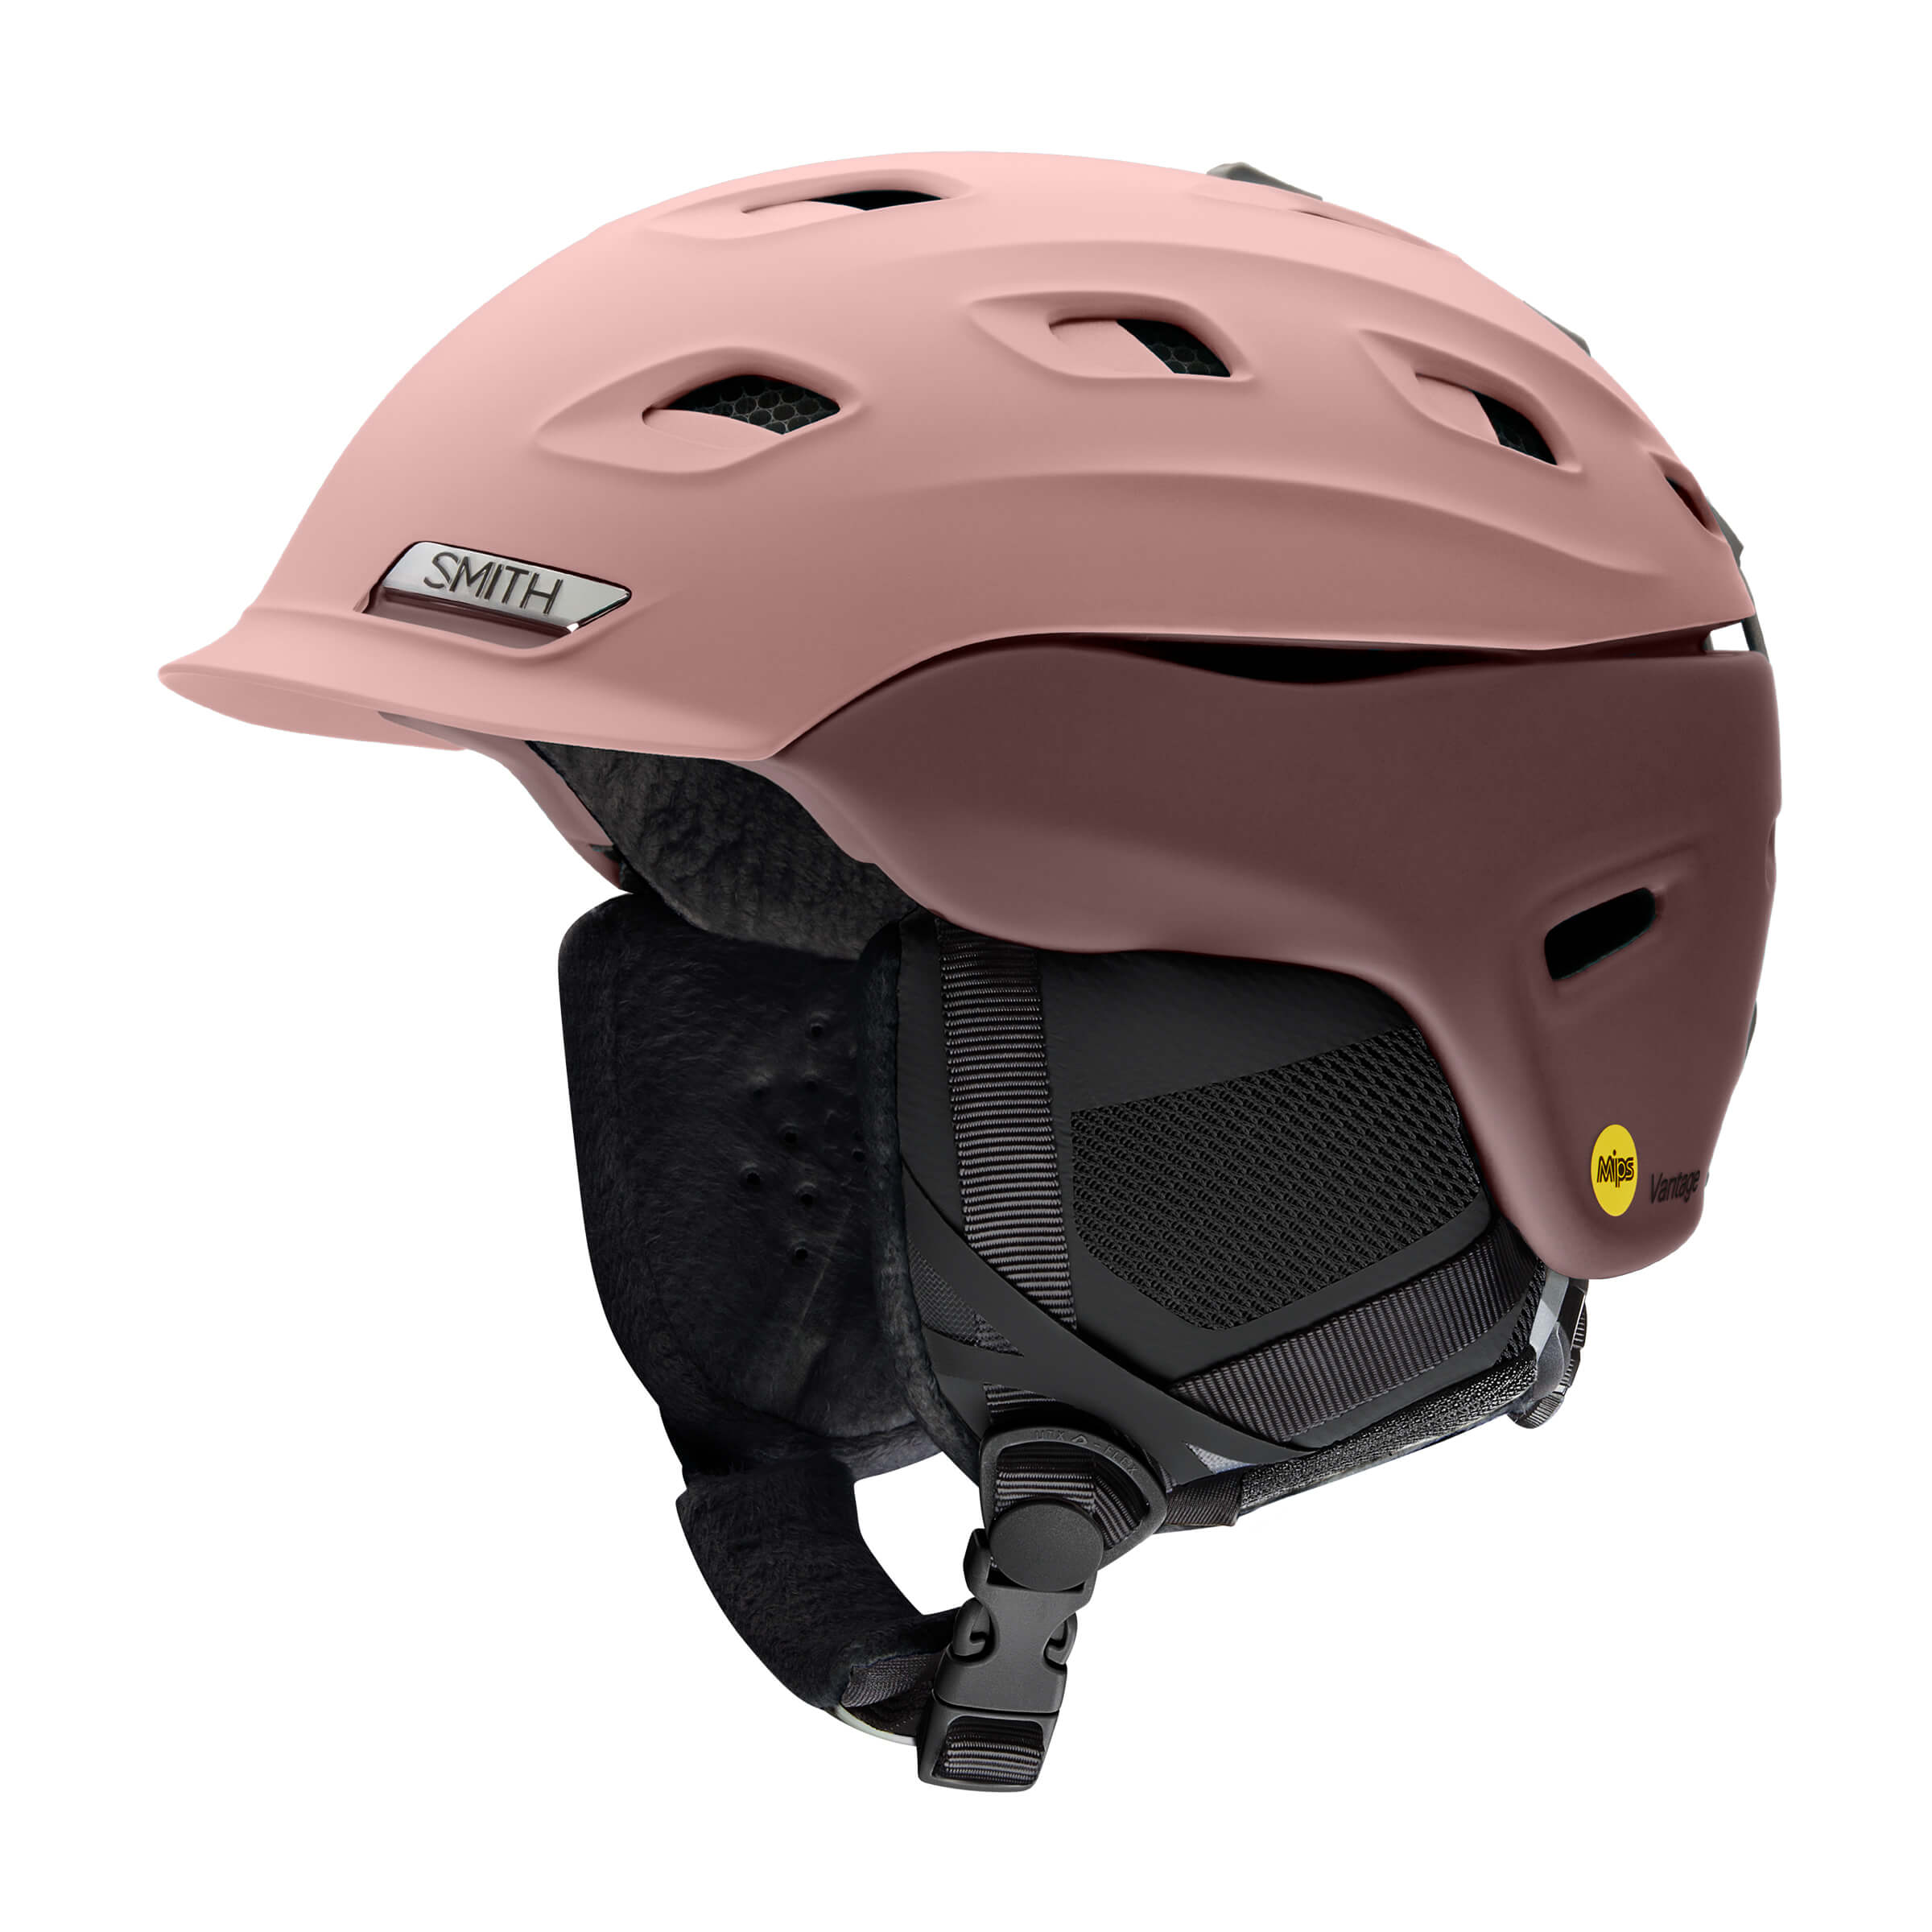 Smith Vantage MIPS Women's Helmet 2021 - The Boot Pro